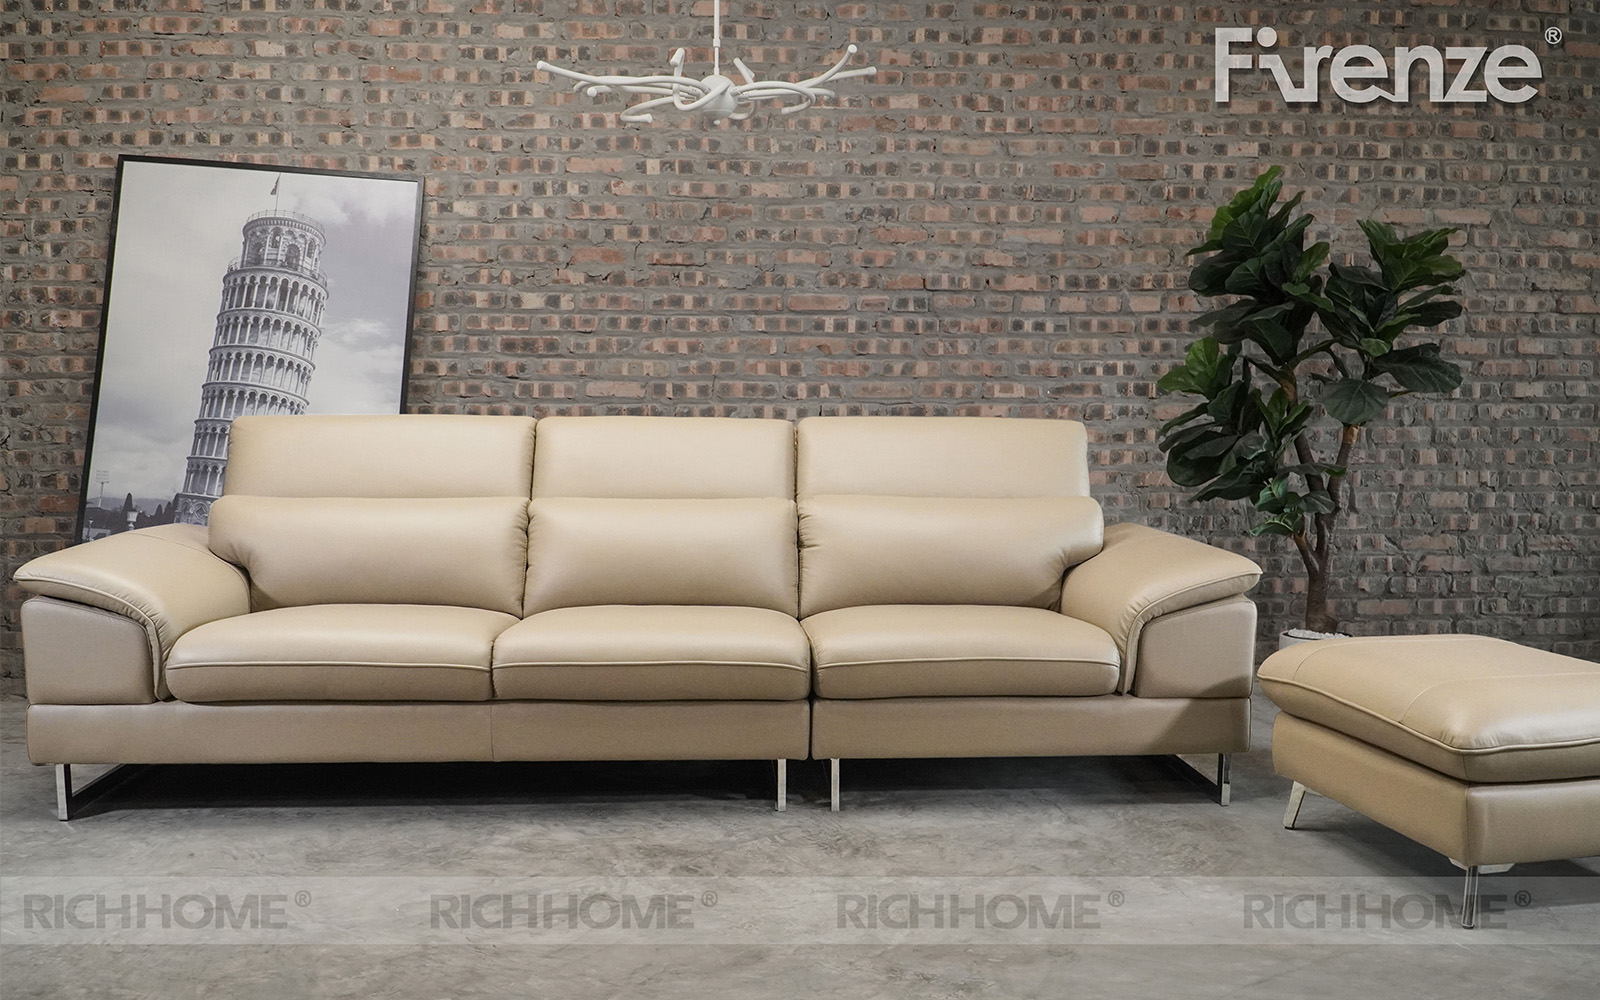 10 mẫu sofa nhập khẩu dạng văng 3 lòng ngồi nên mua ngay - Ảnh 5